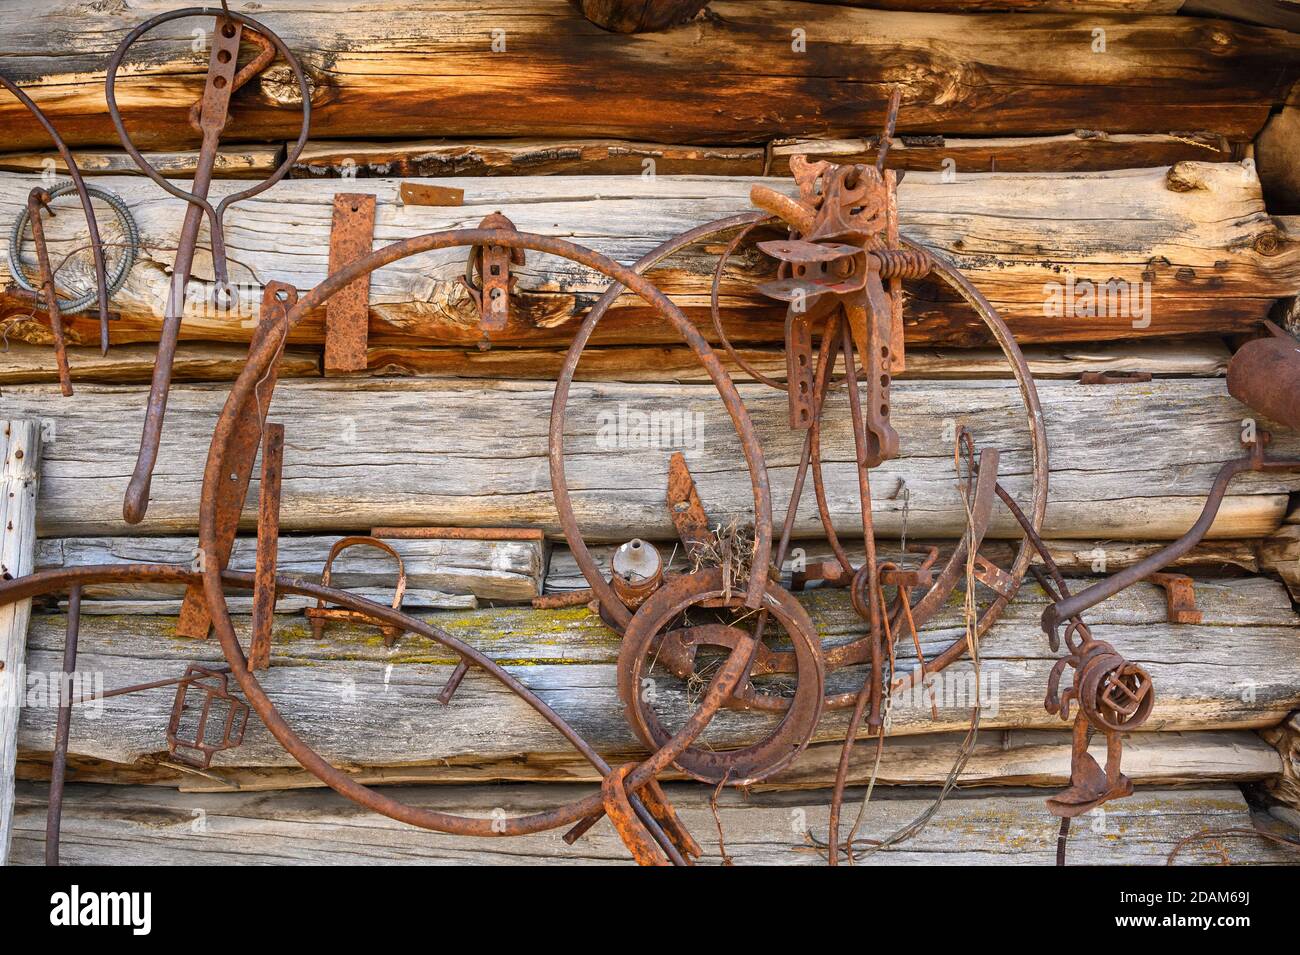 El metal oxidado y la madera envejecida en el histórico Riddle Brothers Ranch en Steens Mountain en el sureste de Oregon. Foto de stock